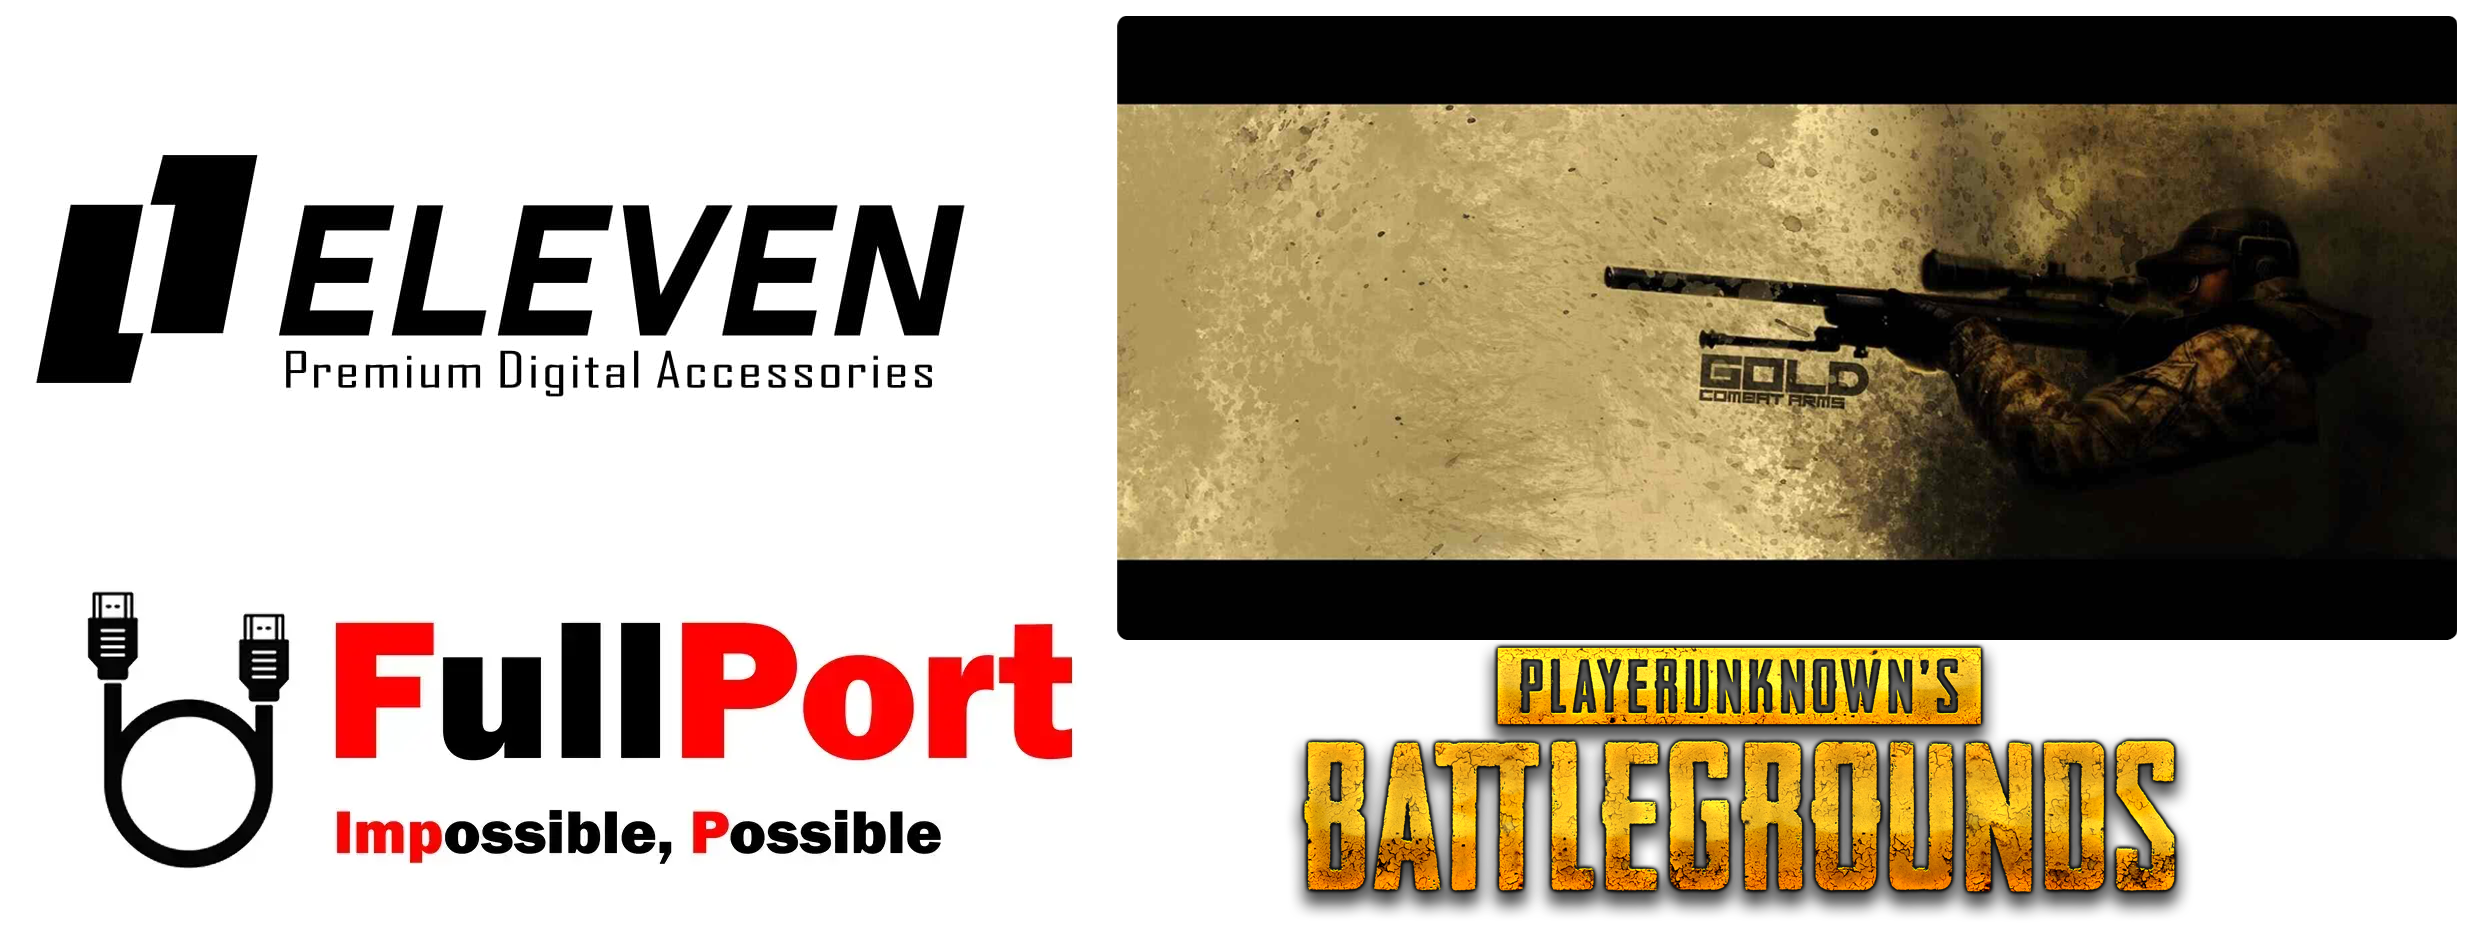 خرید اینترنتی پدموس مخصوص بازی | Gameing ایلون | ELEVEN مدل GMP3070 طرح Battlegrounds Gold Combat Arms از فروشگاه اینترنتی فول پورت